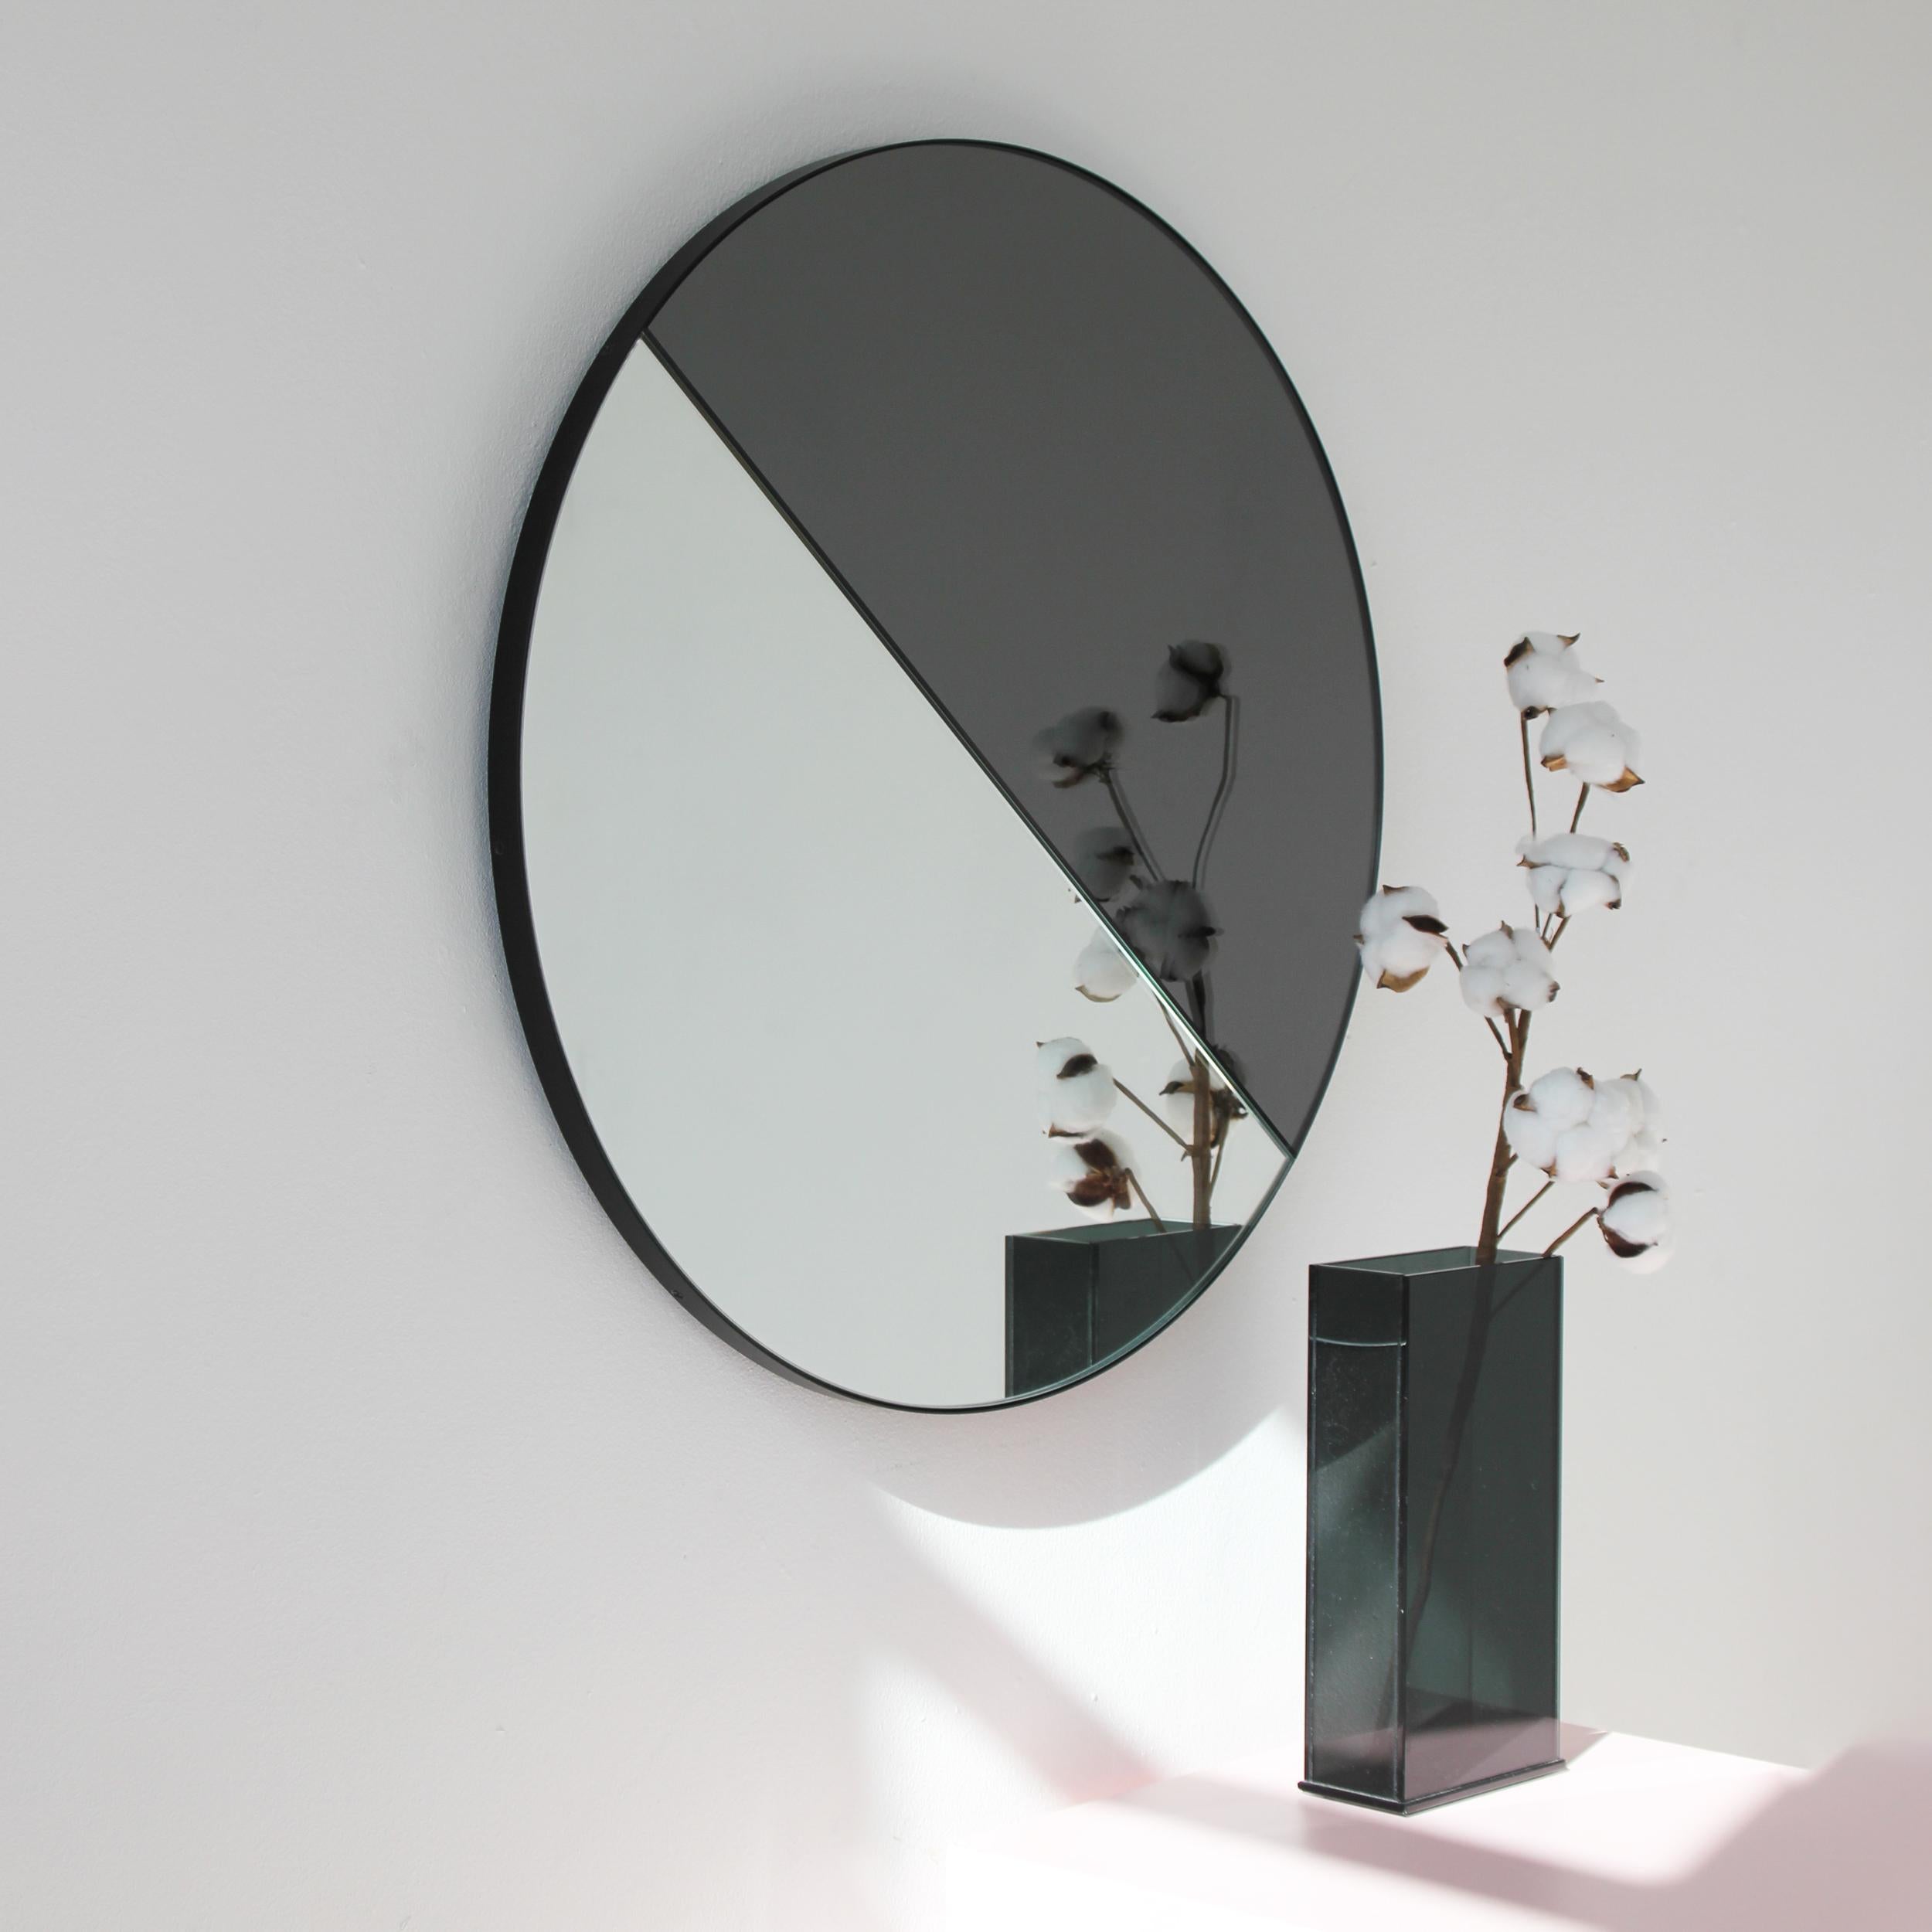 Organique Orbis Dualis Mixed Black Tint Contemporary Round Mirror with Black Frame, Small (miroir rond contemporain avec cadre noir) en vente